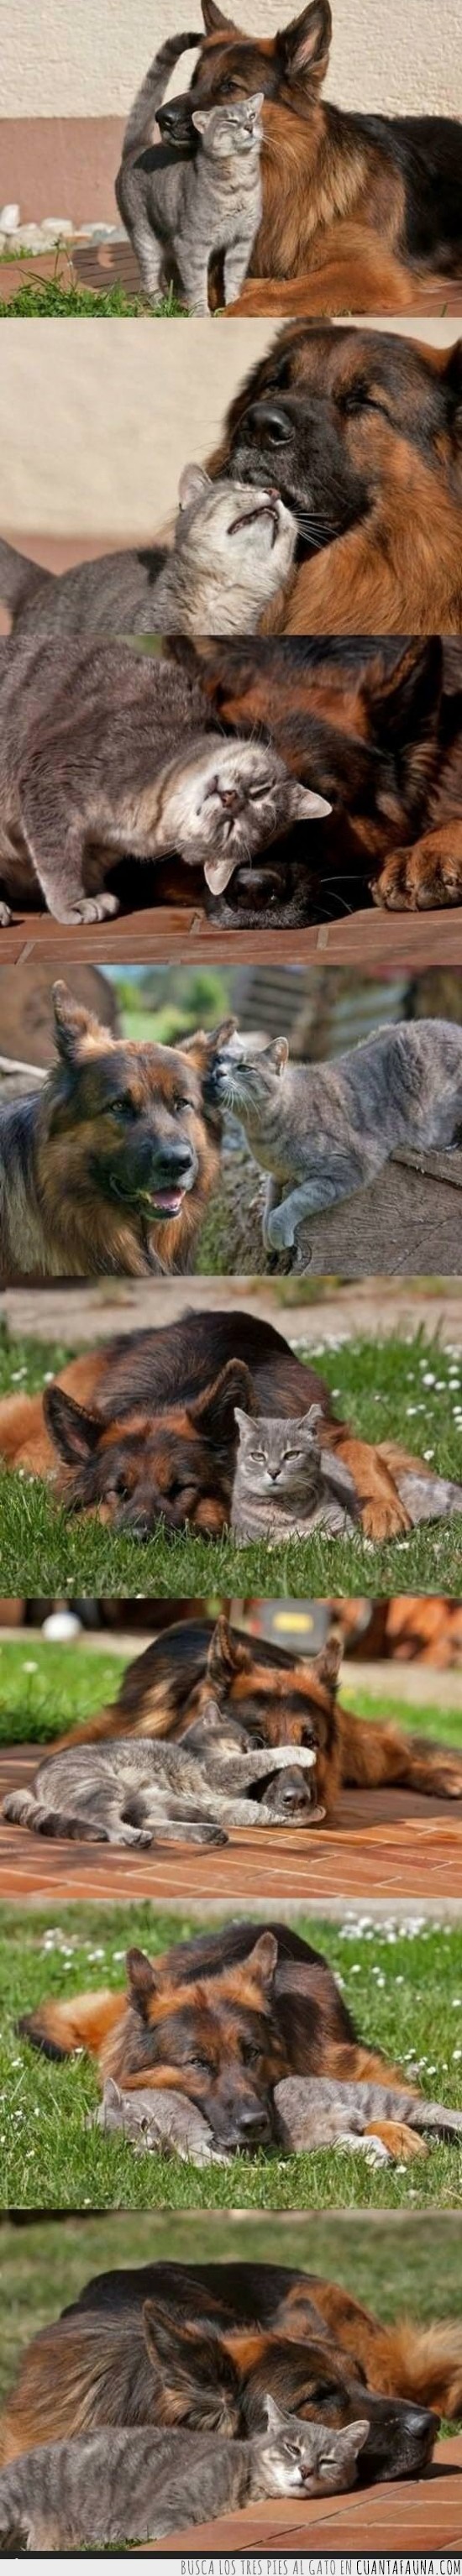 perro,gato,amistad,amor,relacion,quererse,amigos